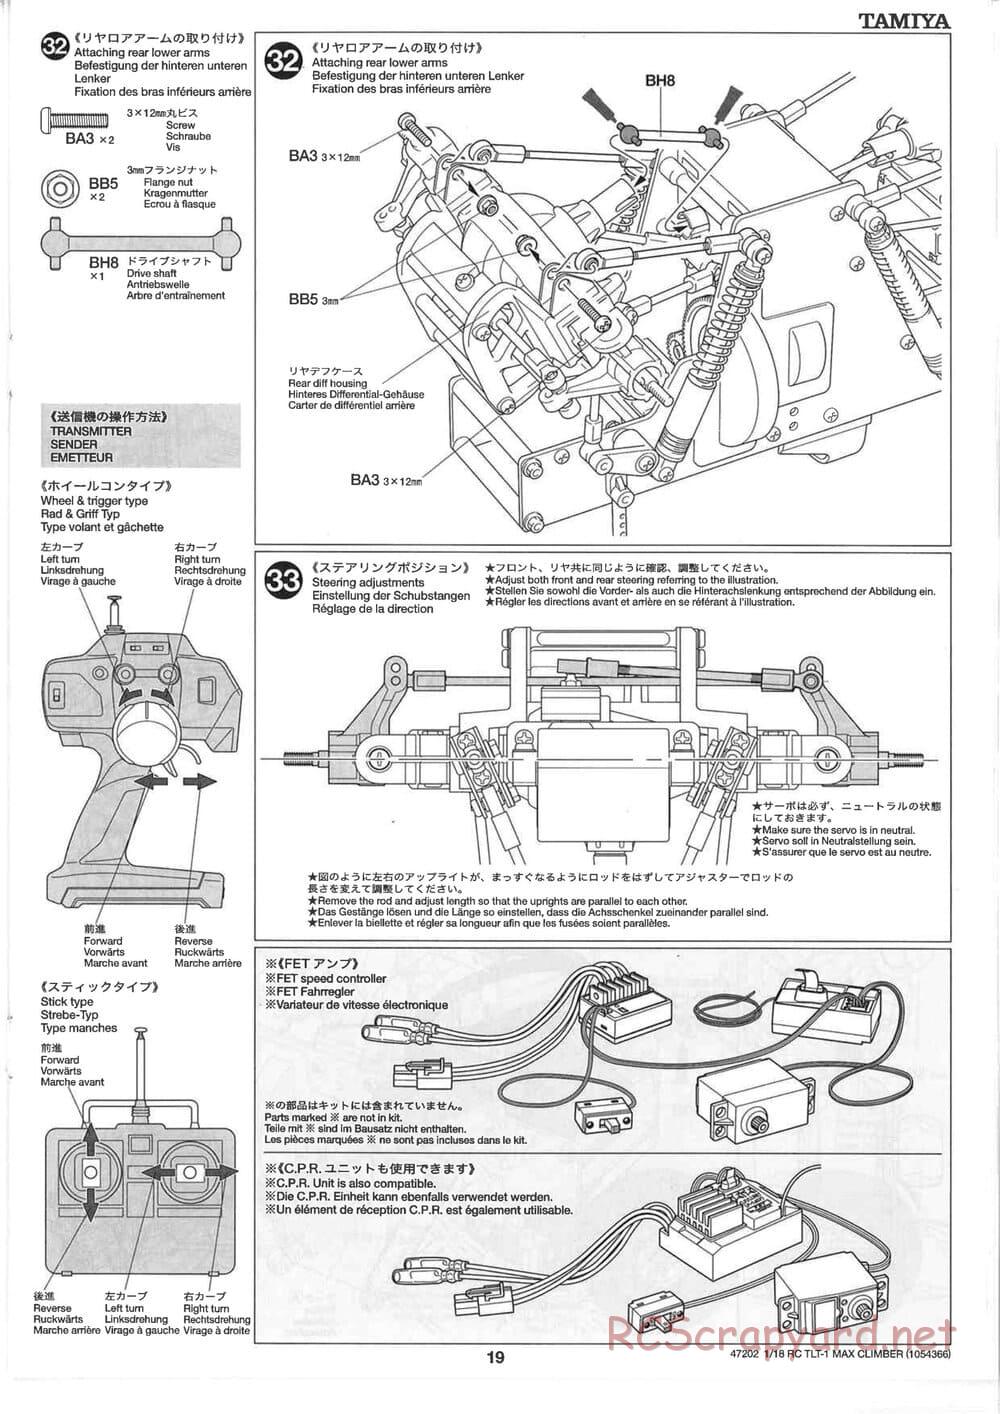 Tamiya - Max Climber - TLT-1 Chassis - Manual - Page 19